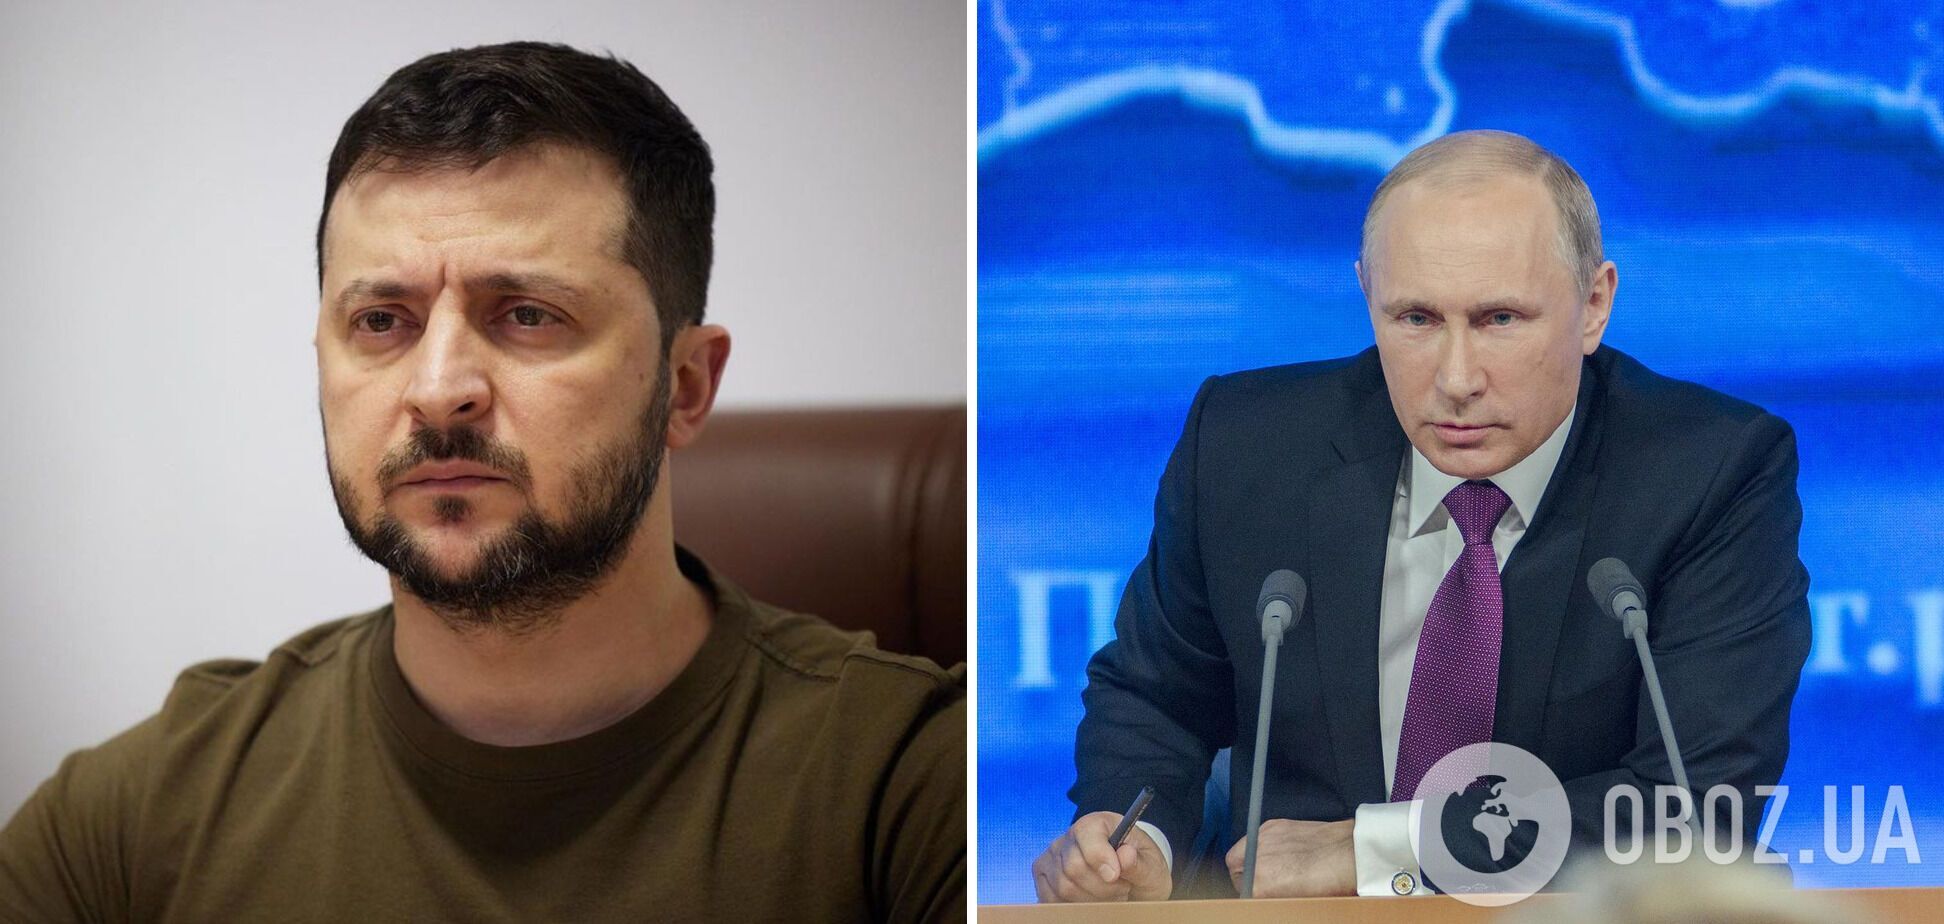 Александр Роднянский уверен, что Владимир Путин недооценил Владимира Зеленского.